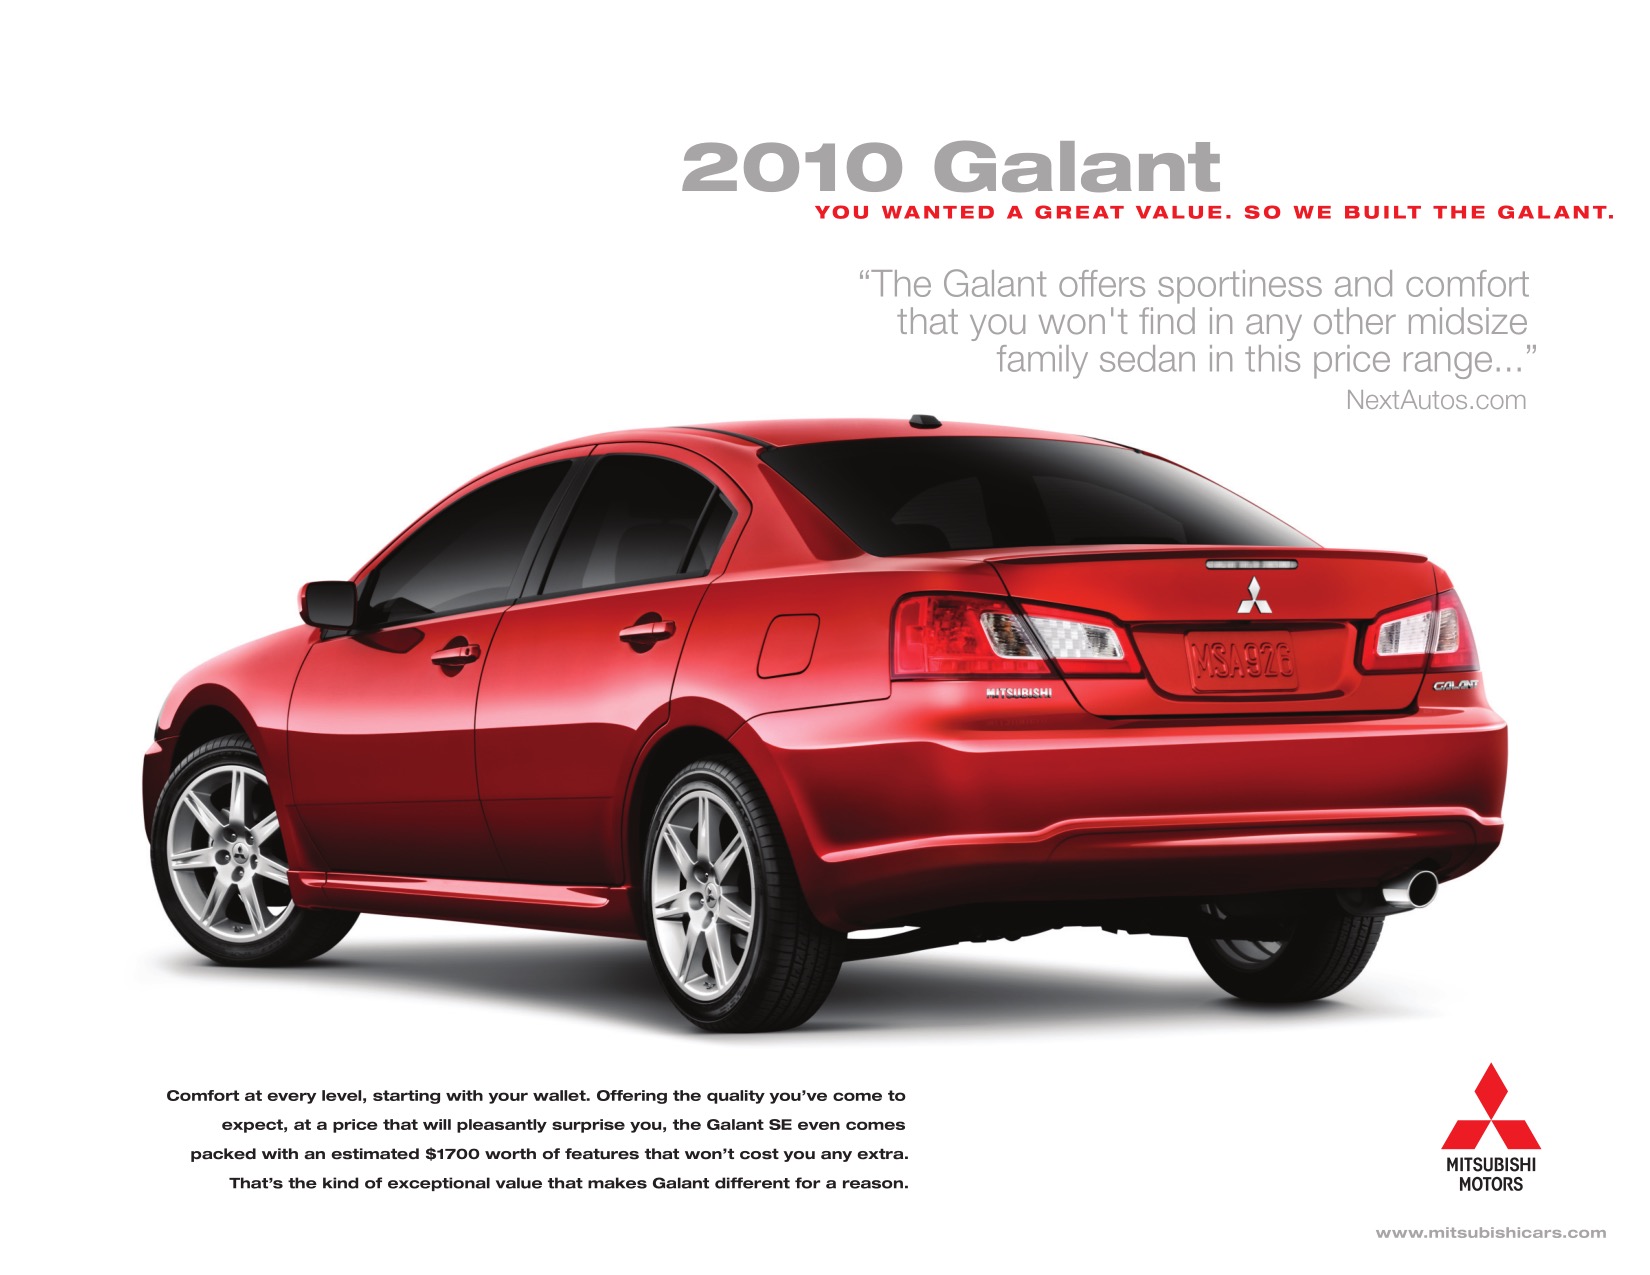 2010 Mitsubishi Galant Brochure Page 4